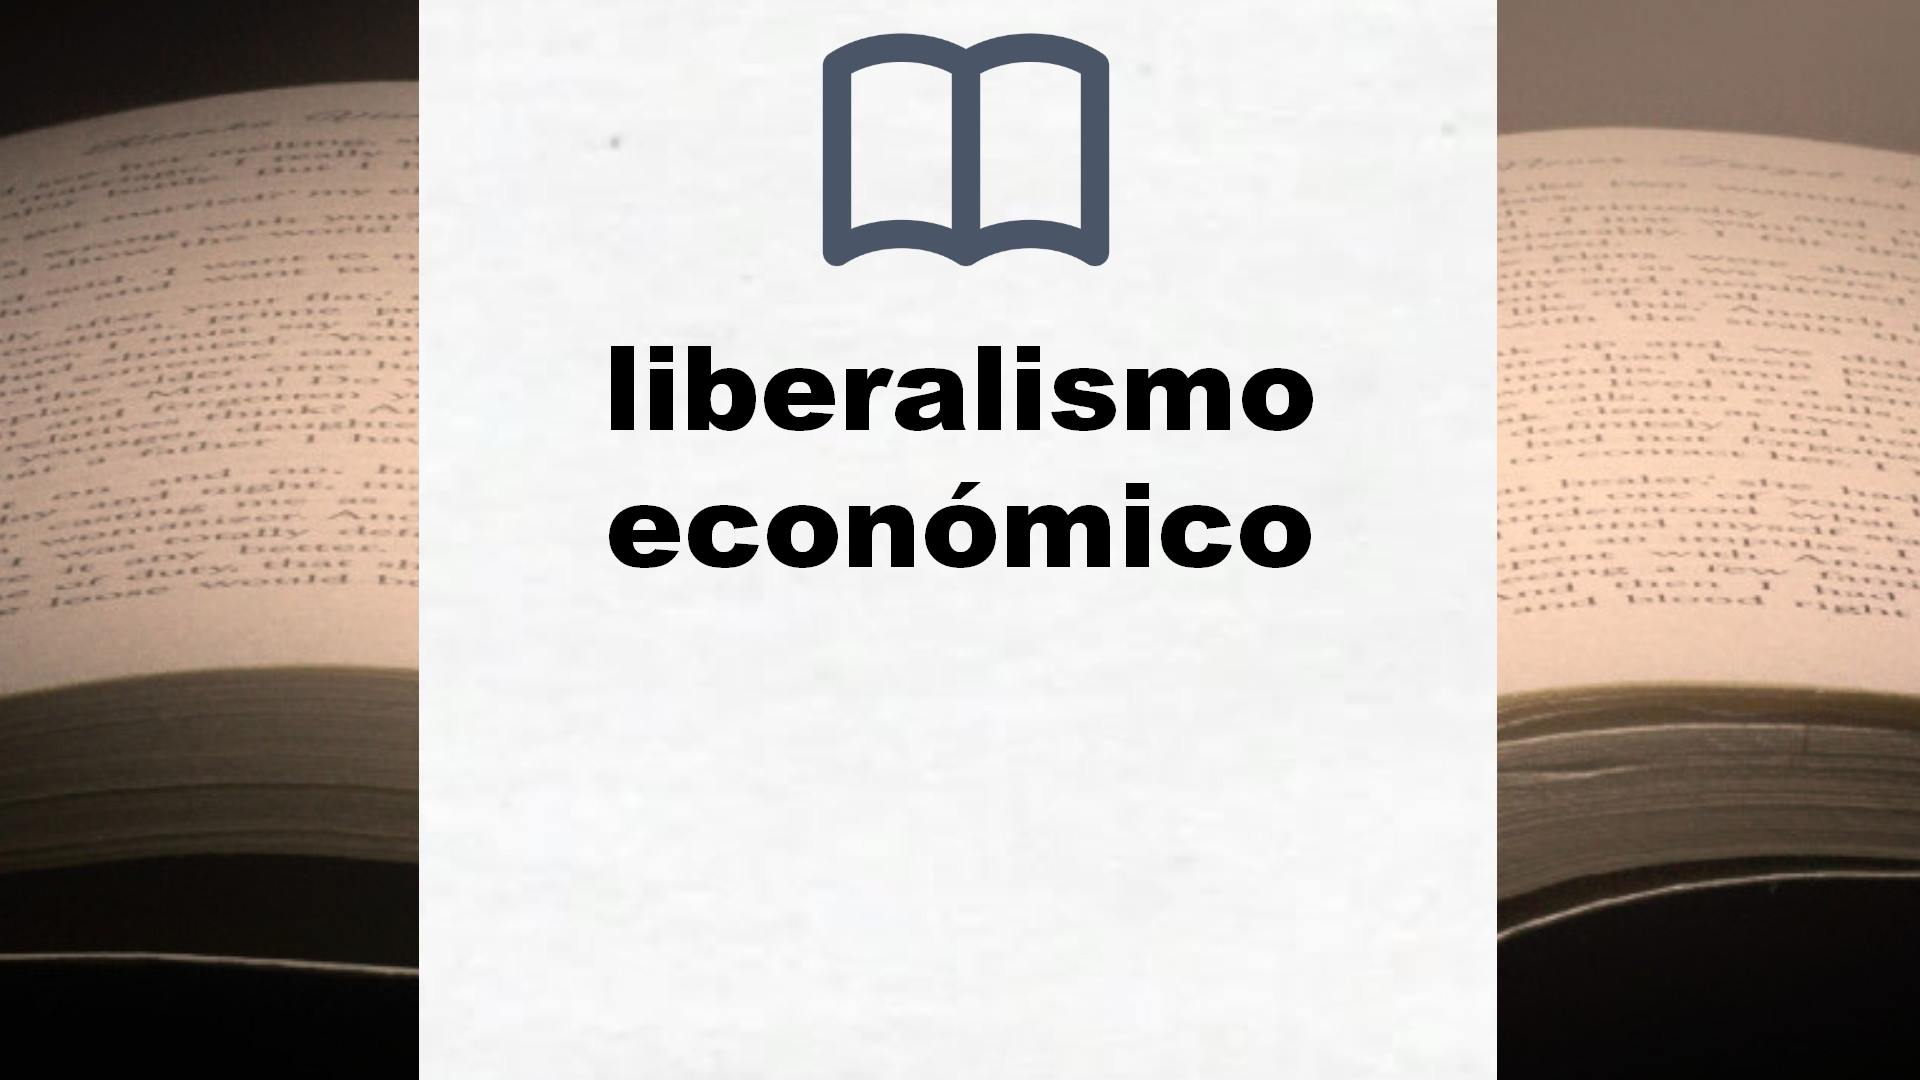 Libros sobre liberalismo económico